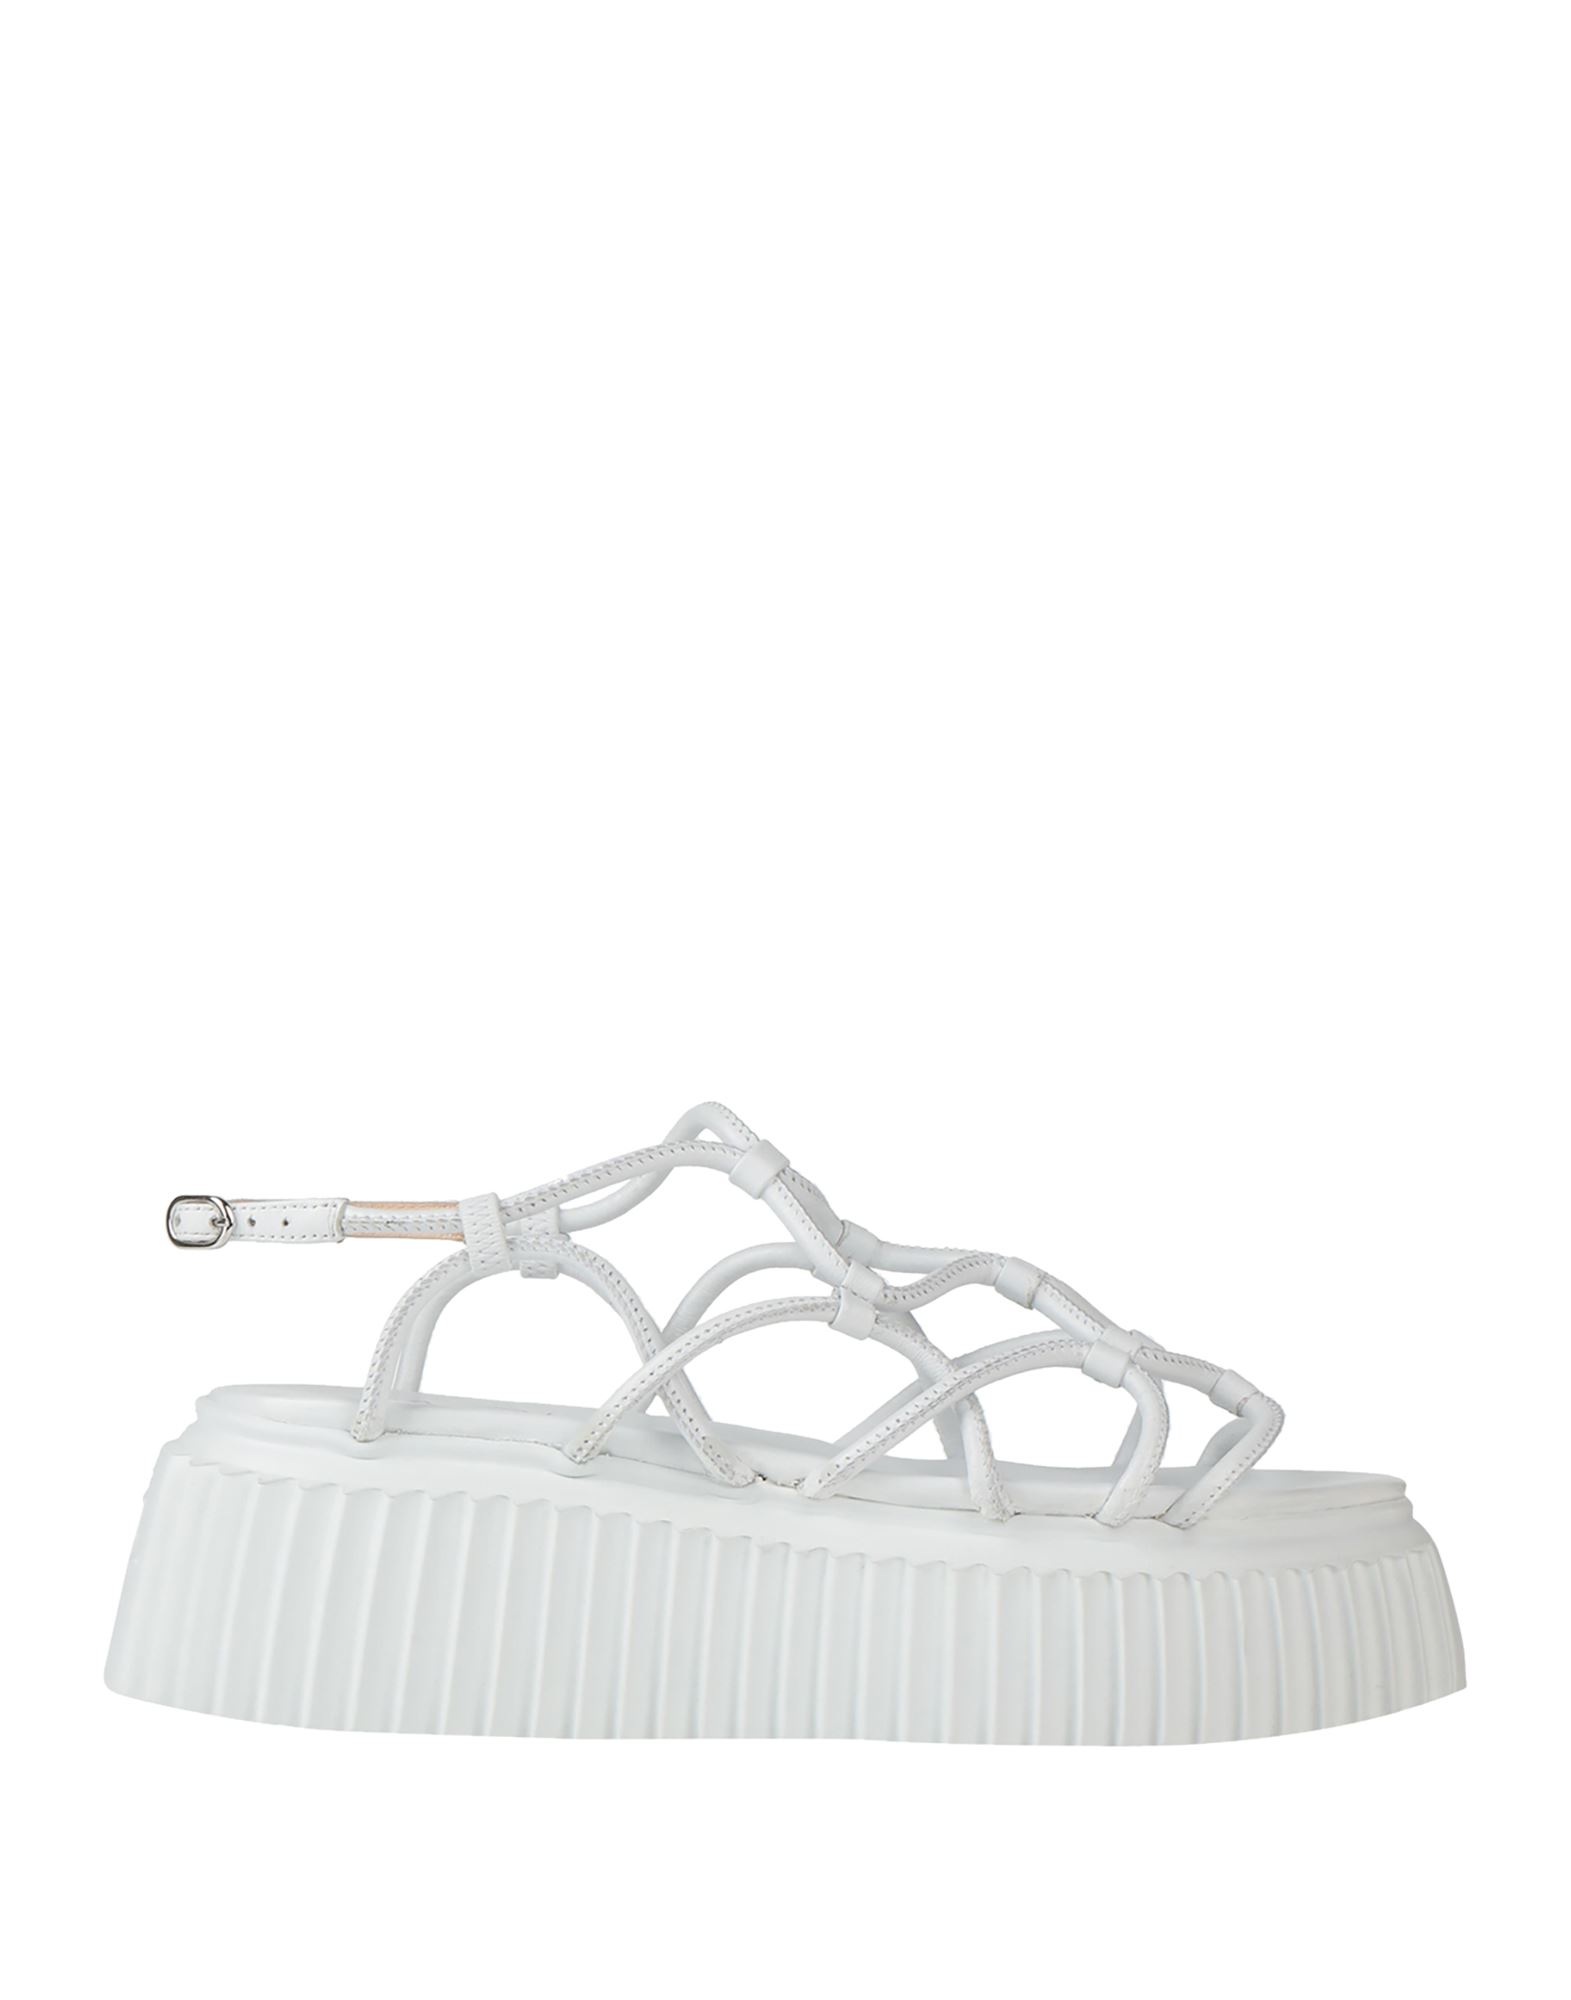 Agl Attilio Giusti Leombruni Sandals In White